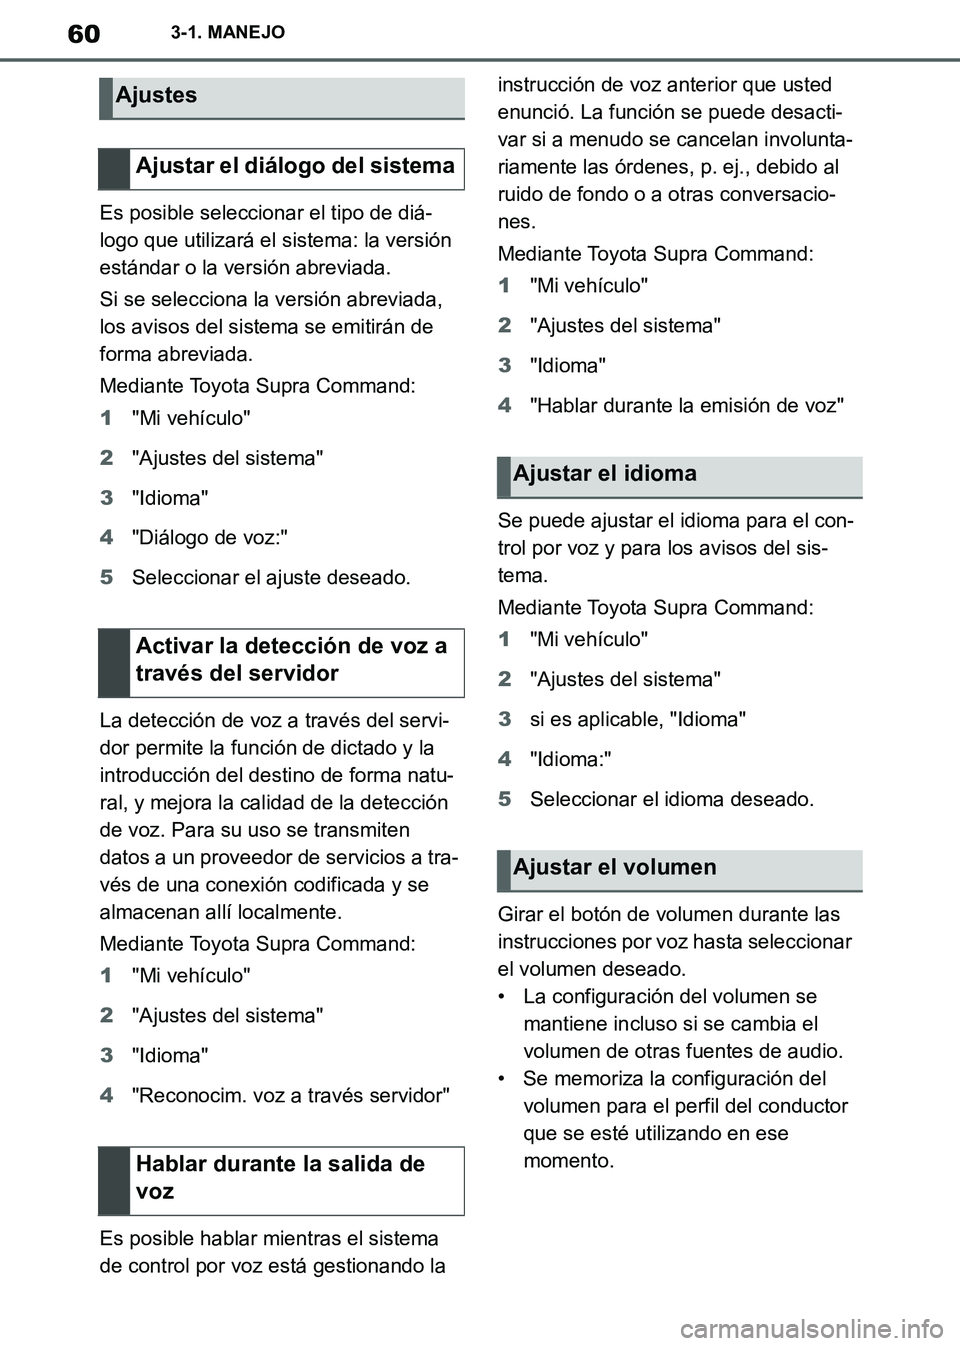 TOYOTA SUPRA 2019  Manuale de Empleo (in Spanish) 60
Supra Owners Manual_ES
3-1. MANEJO
Es posible seleccionar el tipo de diá-
logo que utilizará el sistema: la versión 
estándar o la versión abreviada.
Si se selecciona la versión abreviada, 
